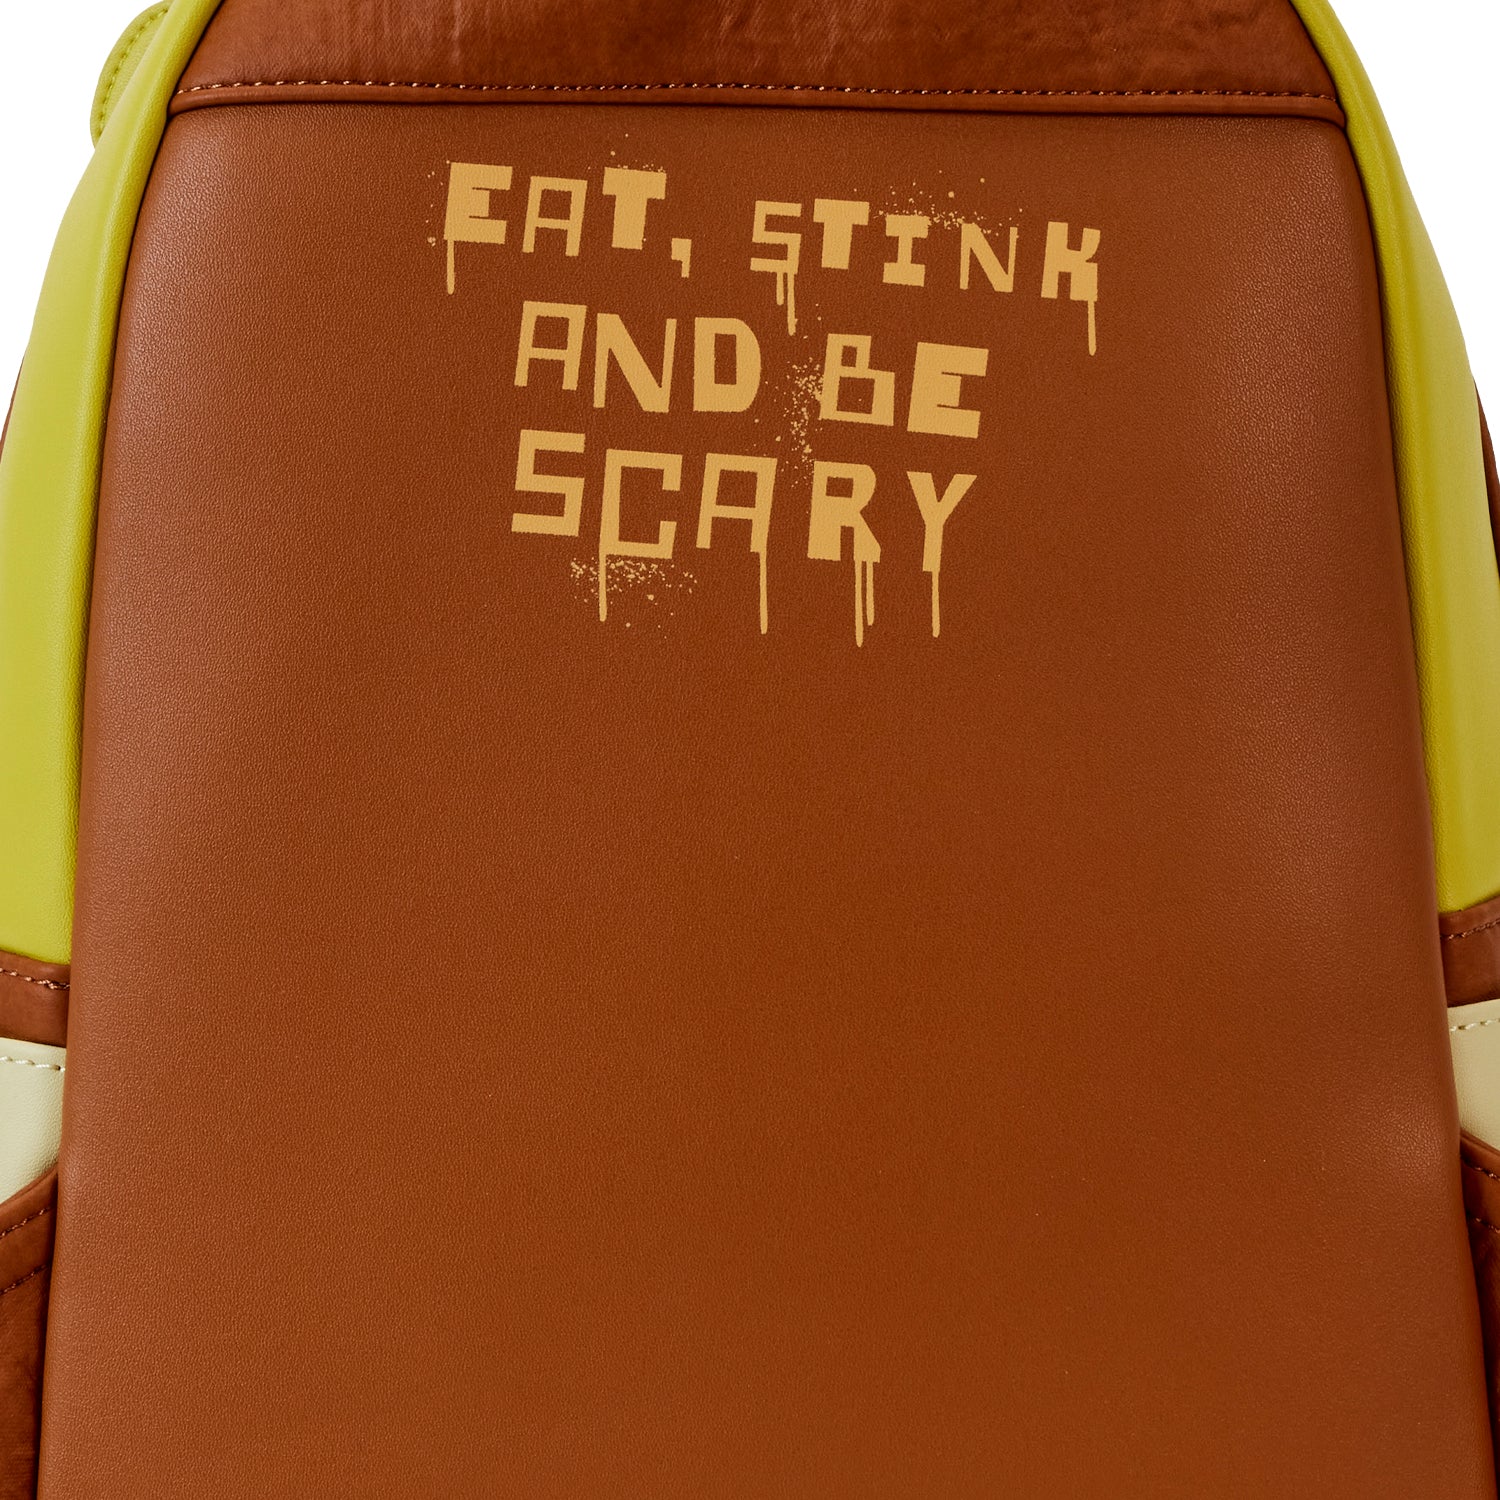 Dreamworks | Shrek Keep Out Cosplay Mini Backpack